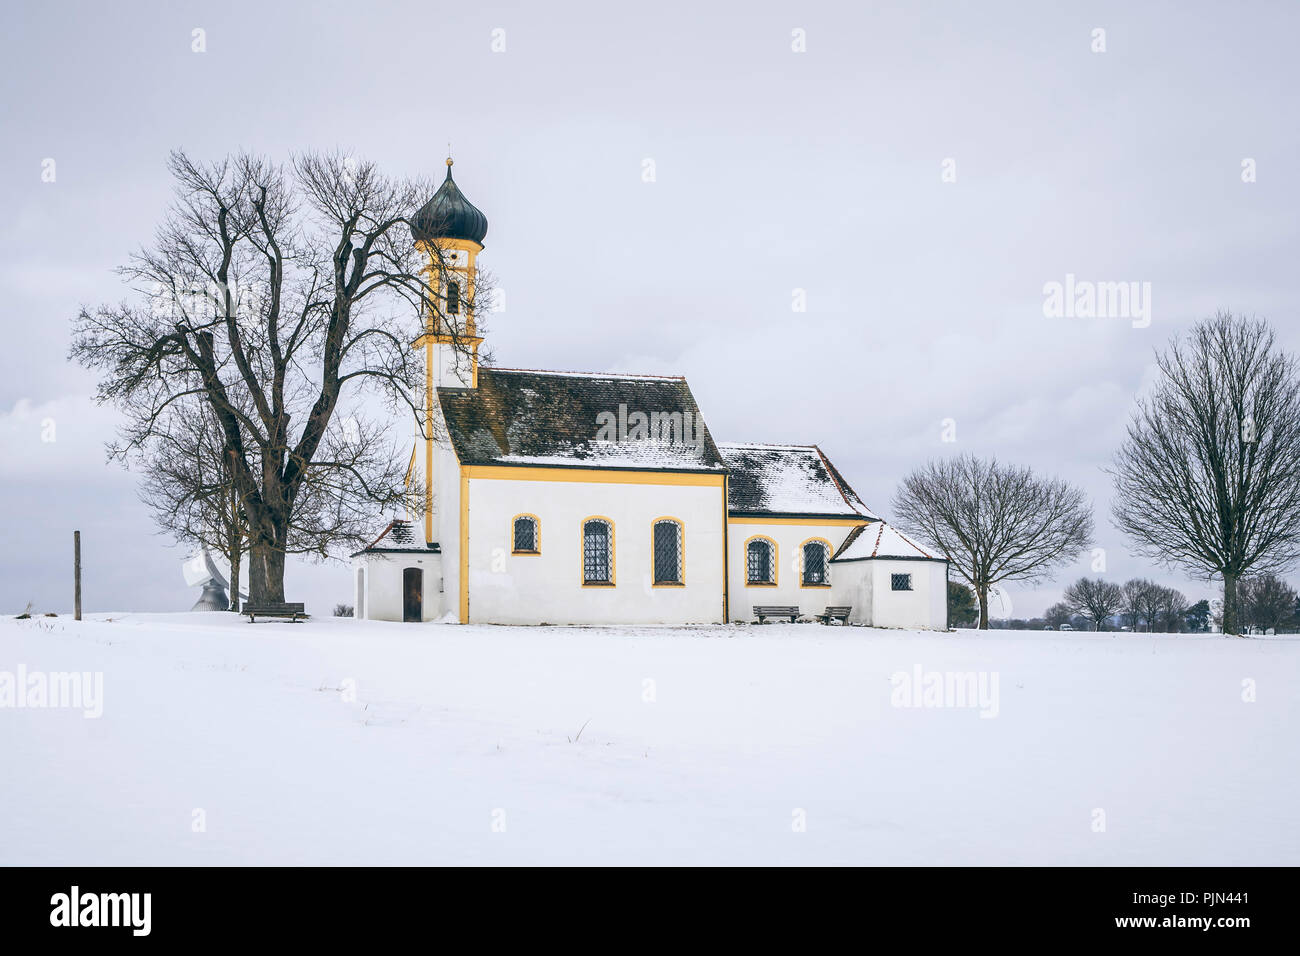 A snowy church in Raisting, Germany, Eine schneebedeckte Kirche in Raisting, Deutschland Stock Photo